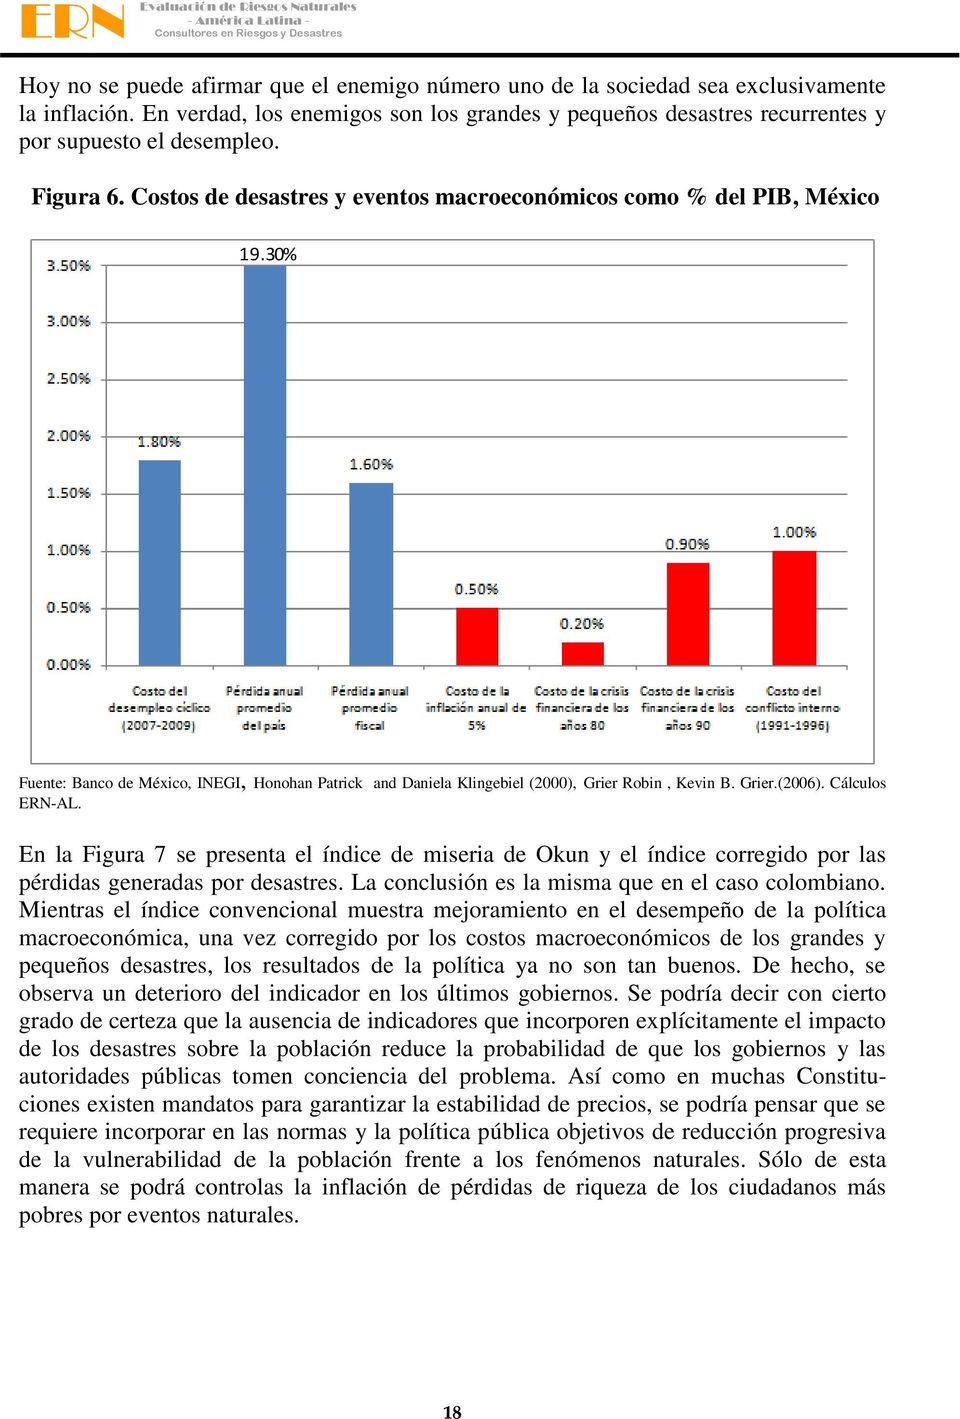 Cálculos ERN-AL. En la Figura 7 se presena el índice de miseria de Okun y el índice corregido por las pérdidas generadas por desasres. La conclusión es la misma que en el caso colombiano.